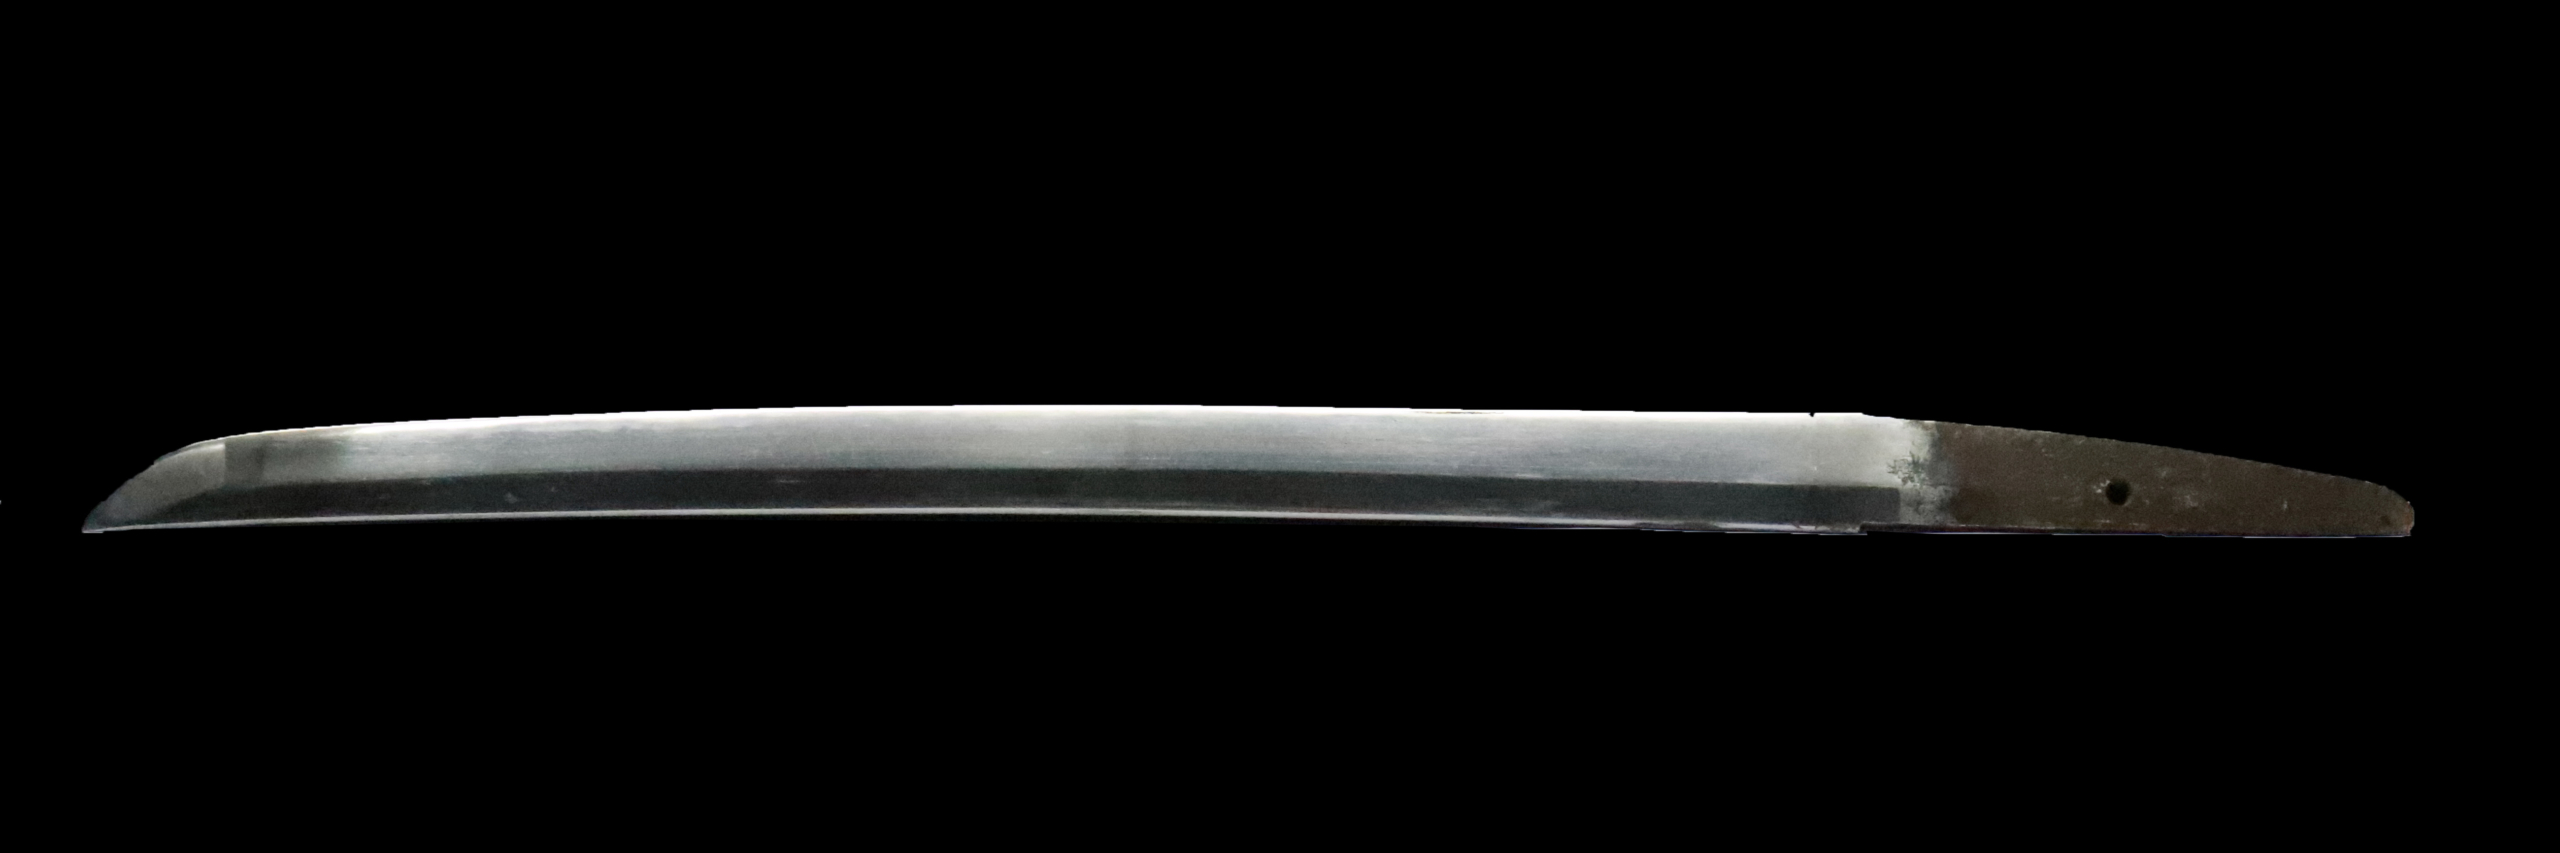 無銘(拵)脇差 | 日本刀販売の「勇進堂」 | 刀剣・美術刀剣・刀装具